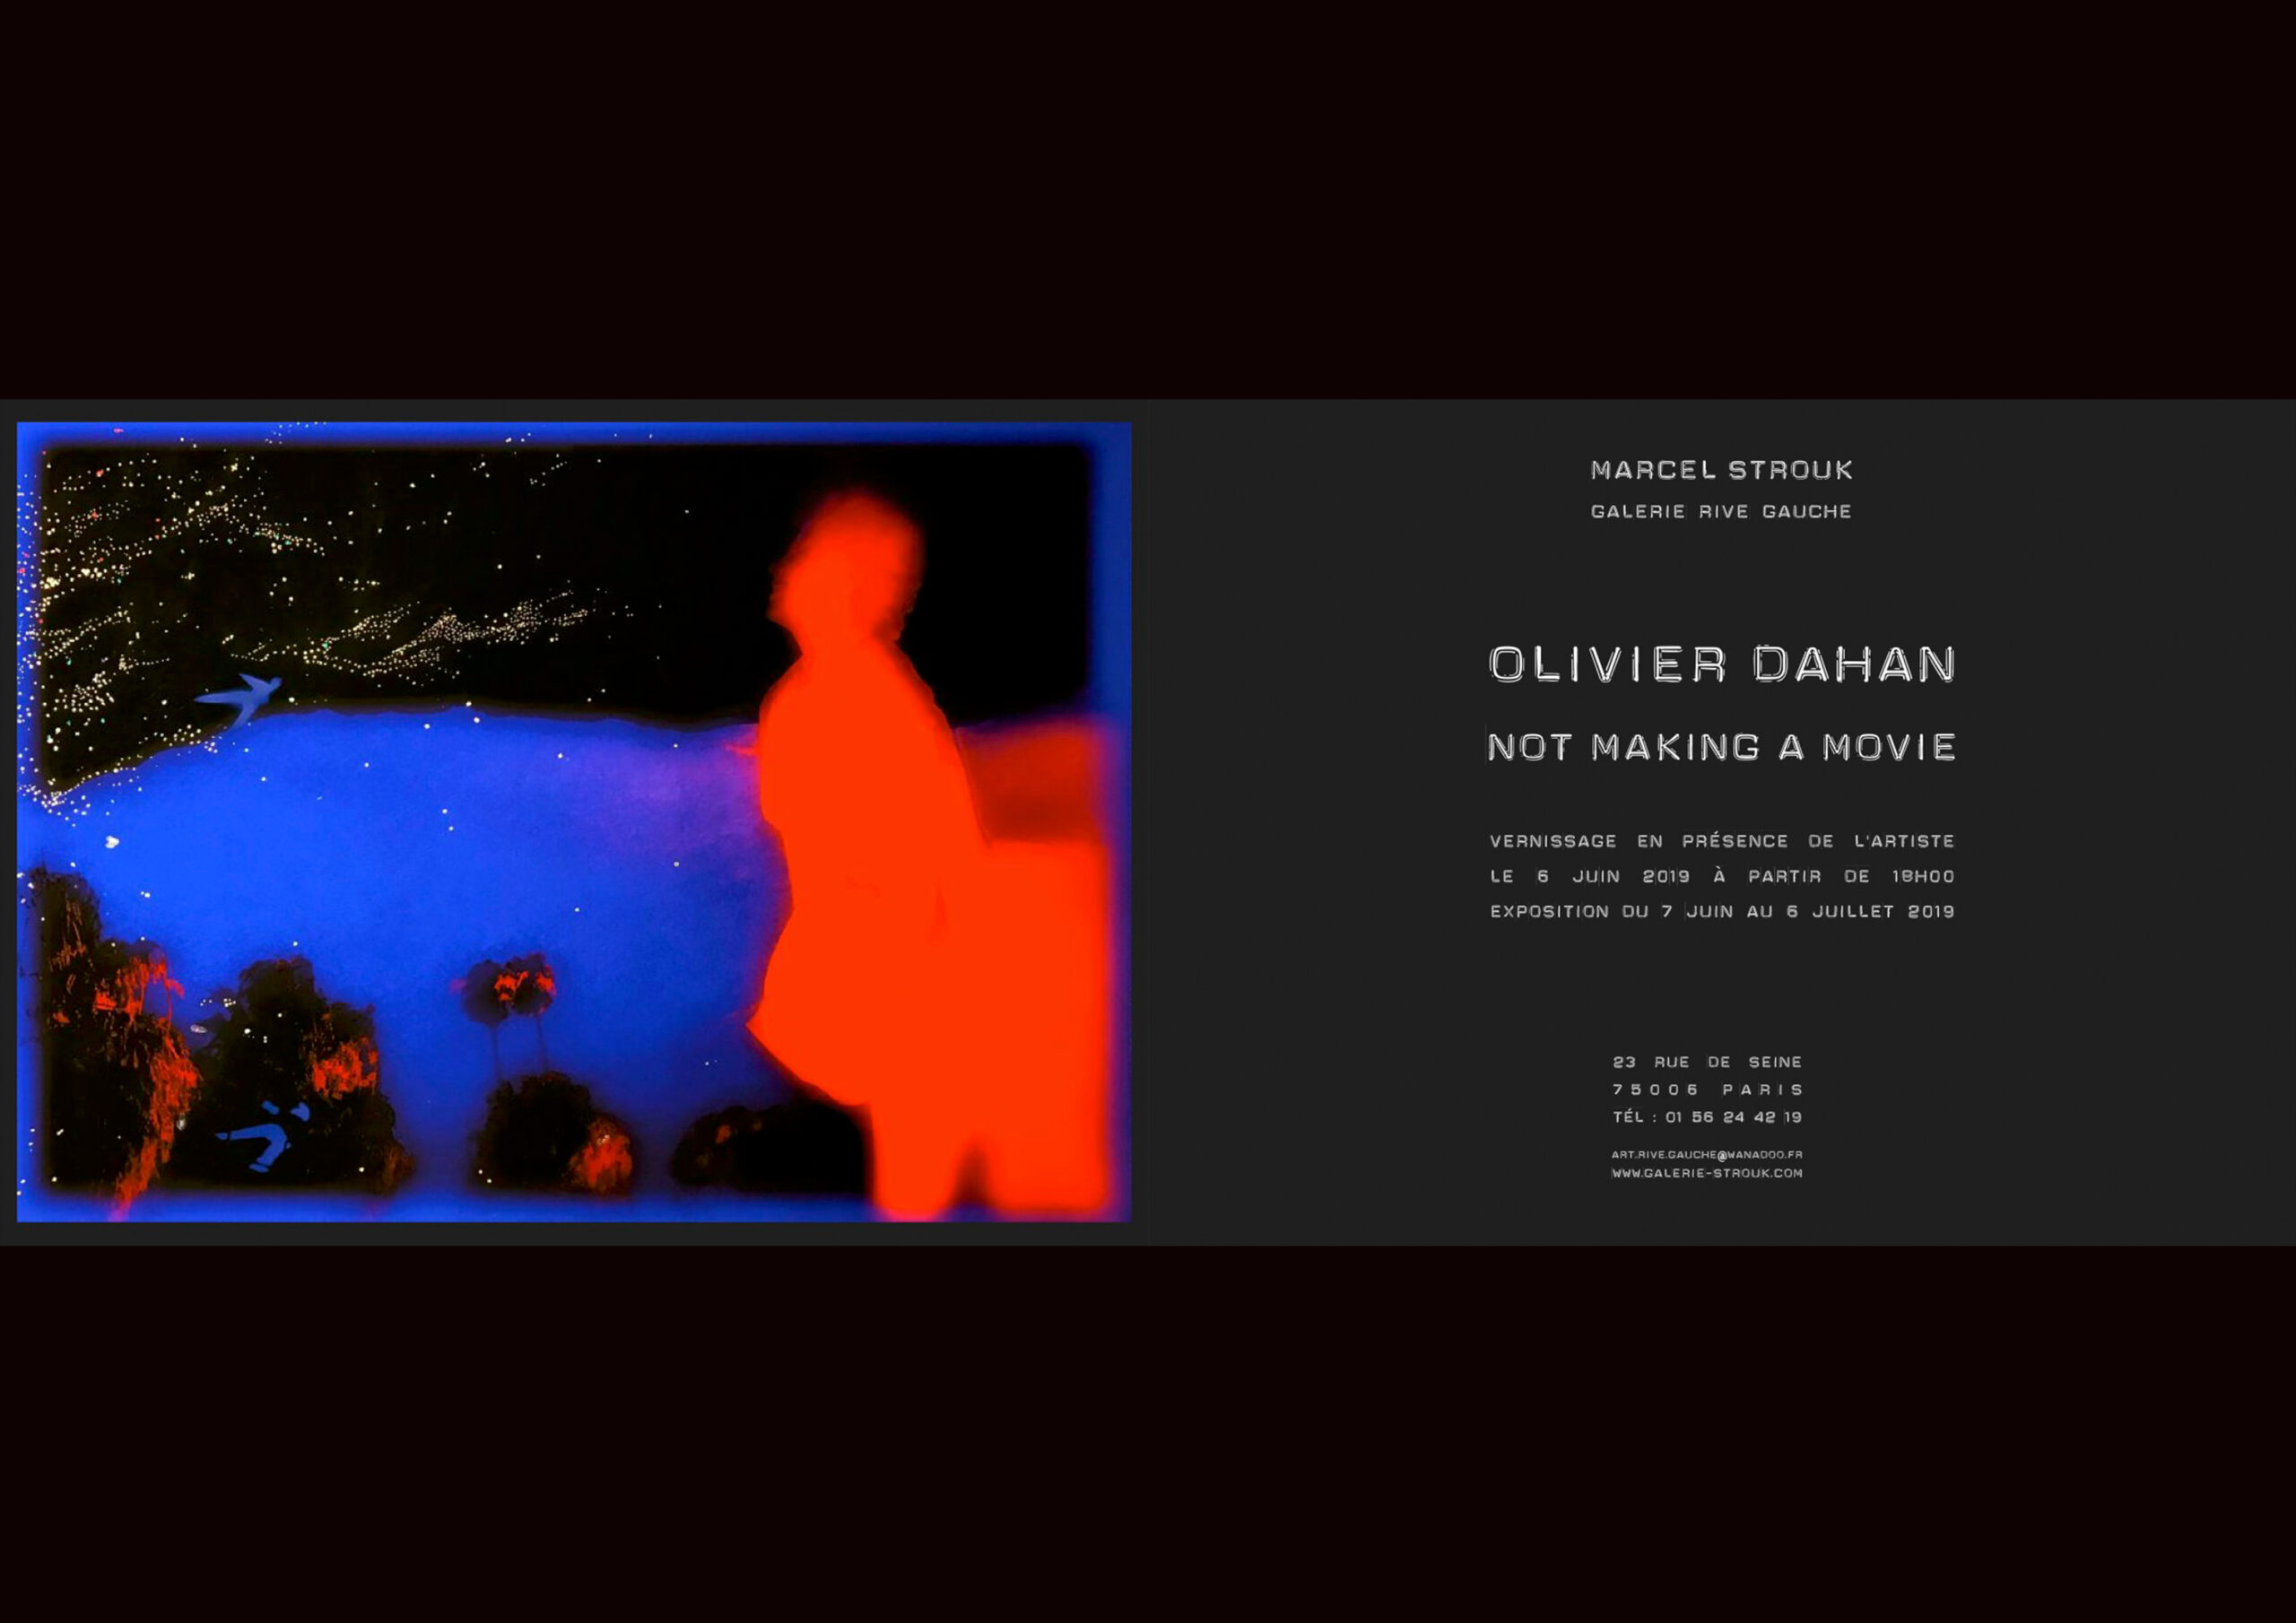 NOT MAKING A MOVIE de Olivier Dahan - MARCEL STROUK Galerie Rive Gauche Paris